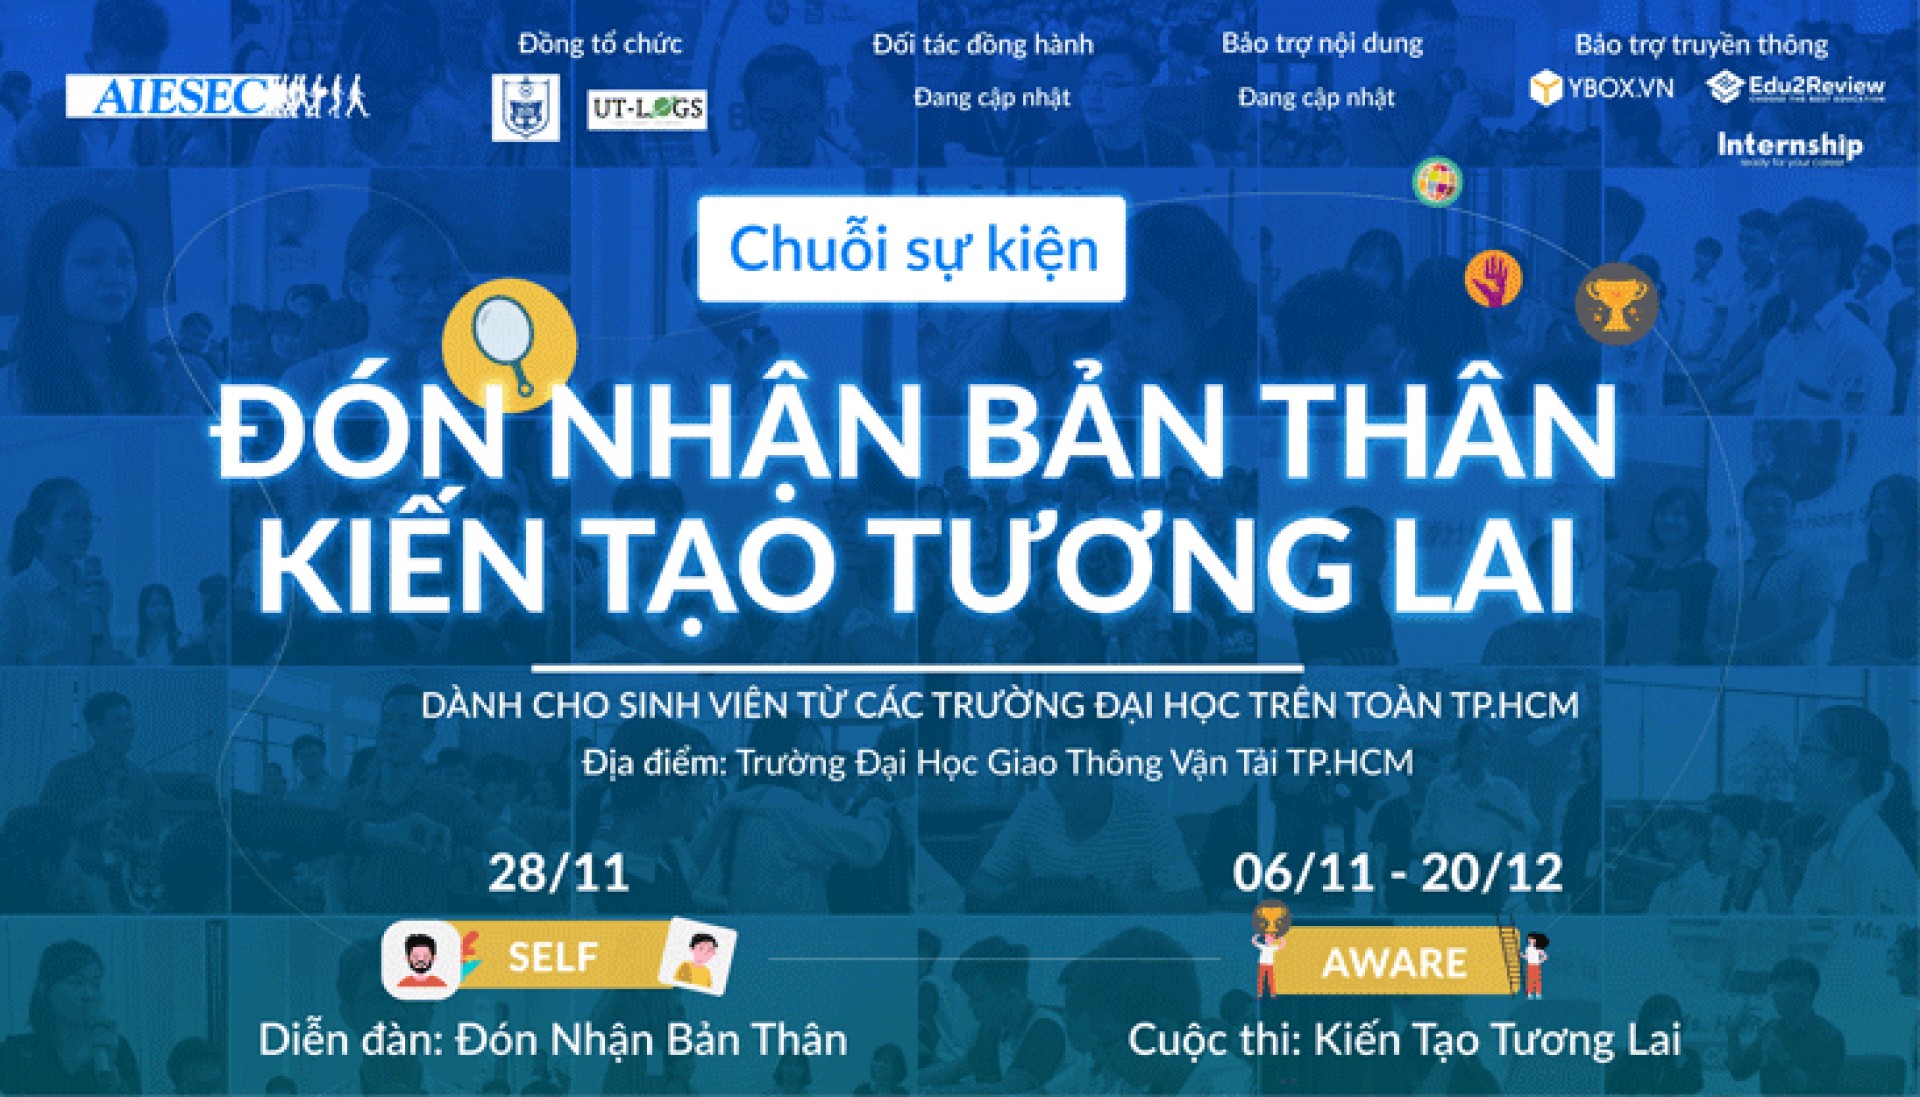 [HCM] [AIESEC Tại Việt Nam] CHUỖI SỰ KIỆN: ĐÓN NHẬN BẢN THÂN, KIẾN TẠO TƯƠNG LAI